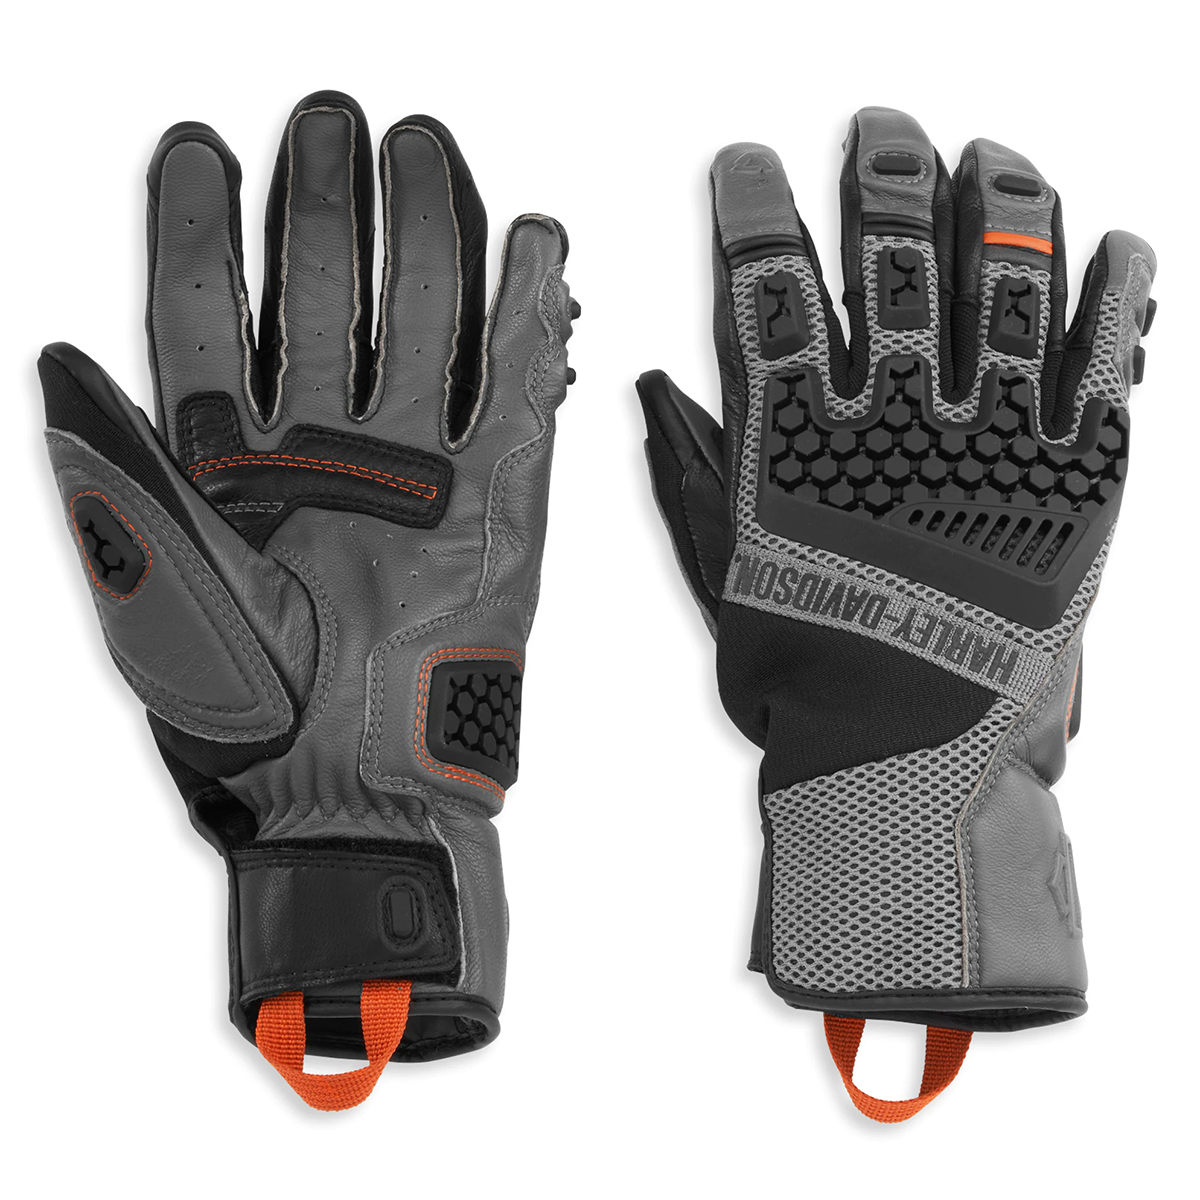 Harley-Davidson Grit Men's Adventure Gauntlet Gloves